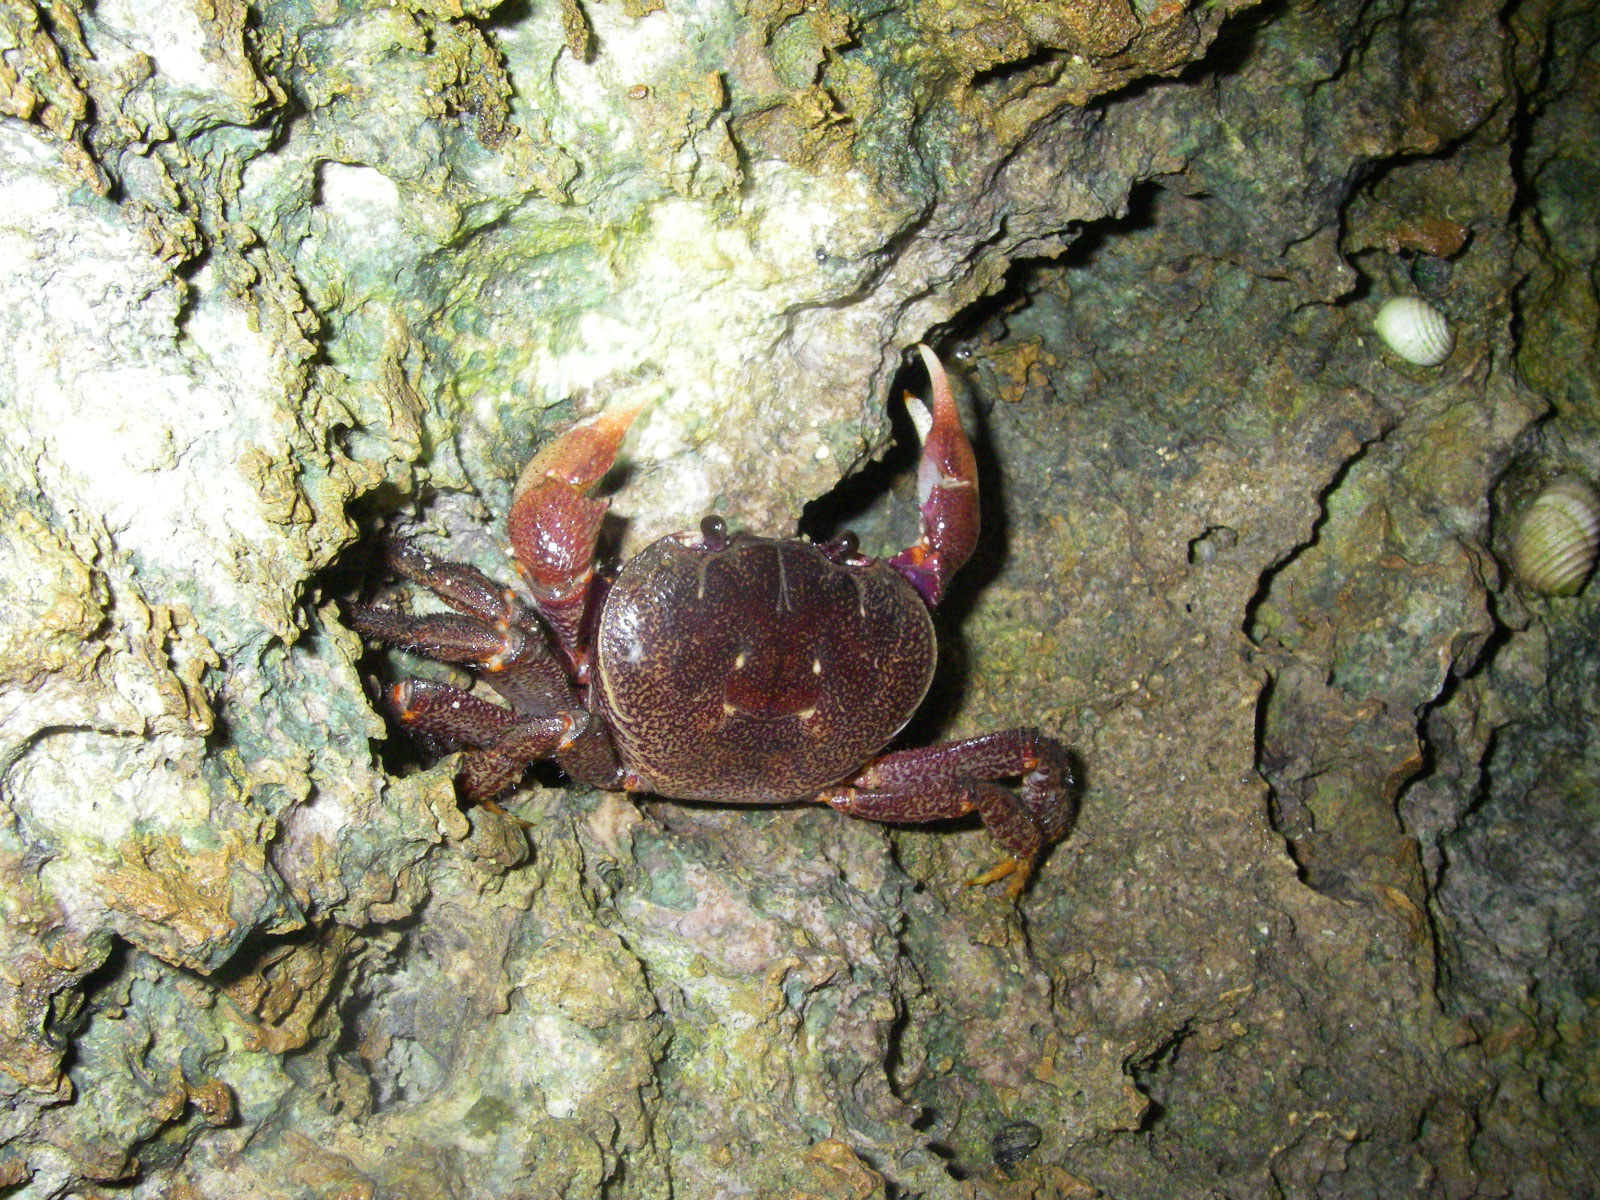 Rugose Land Crab